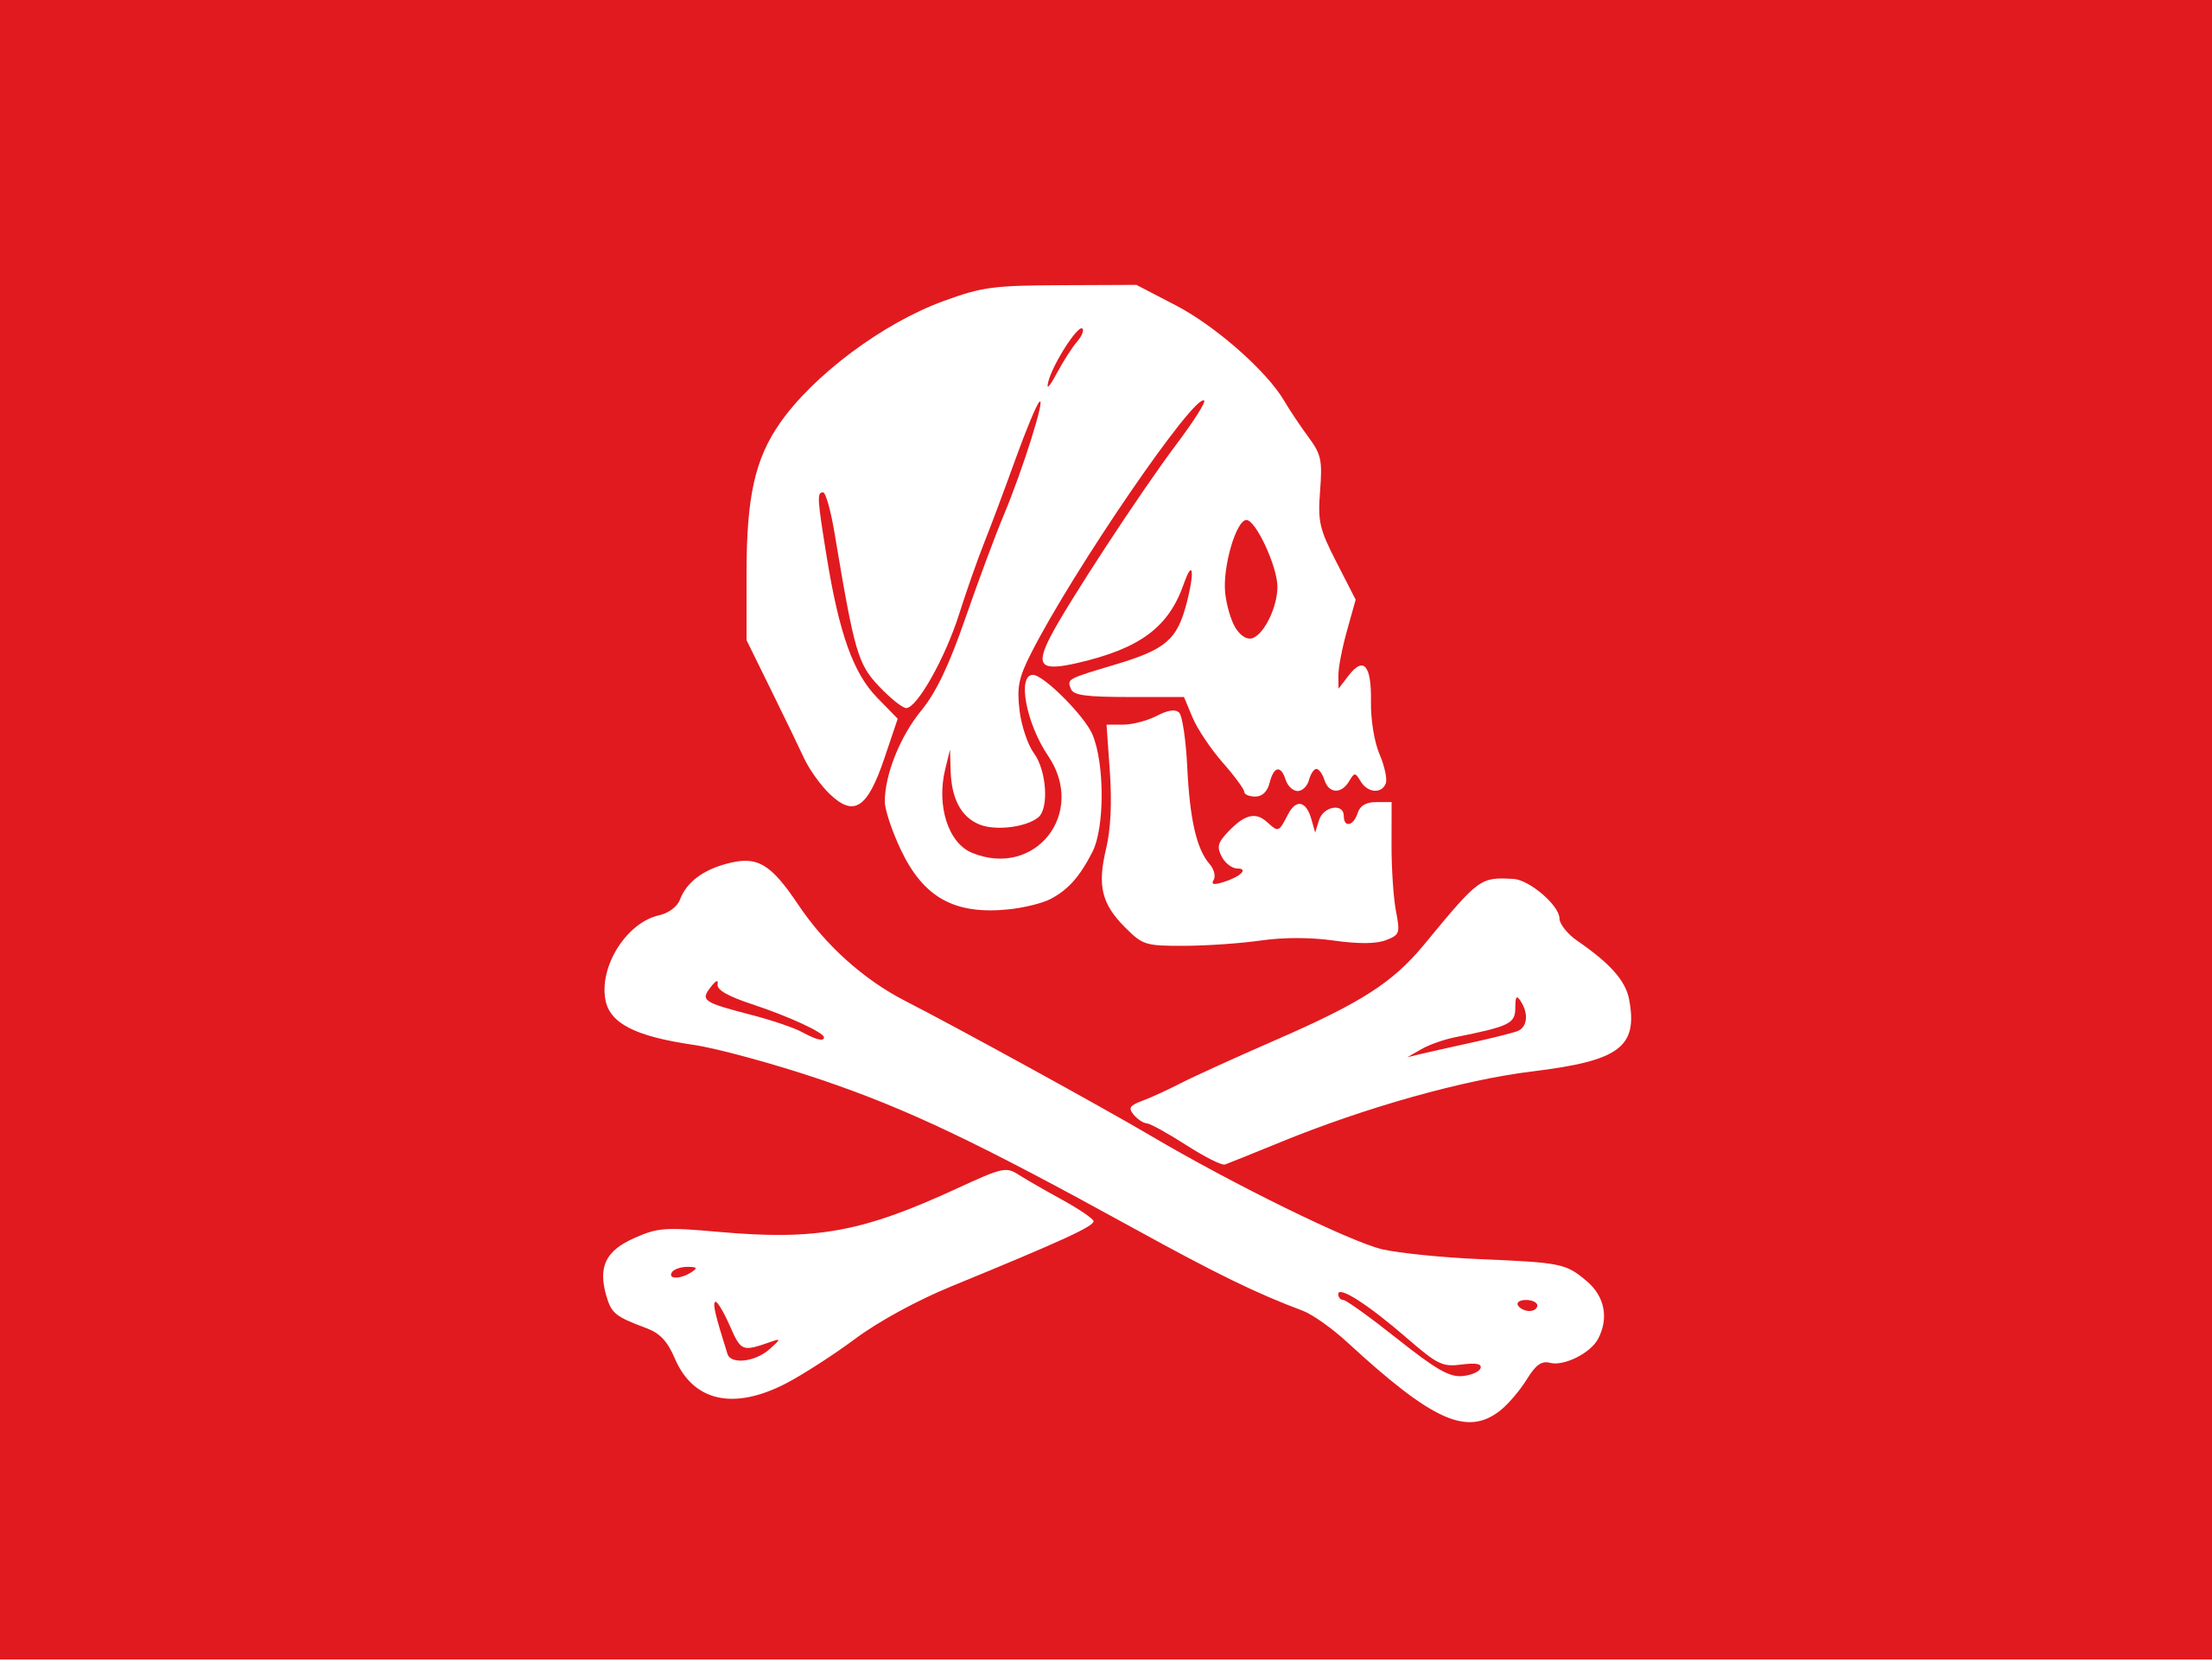 Pirates Flag Skull And Bones 2560x1922